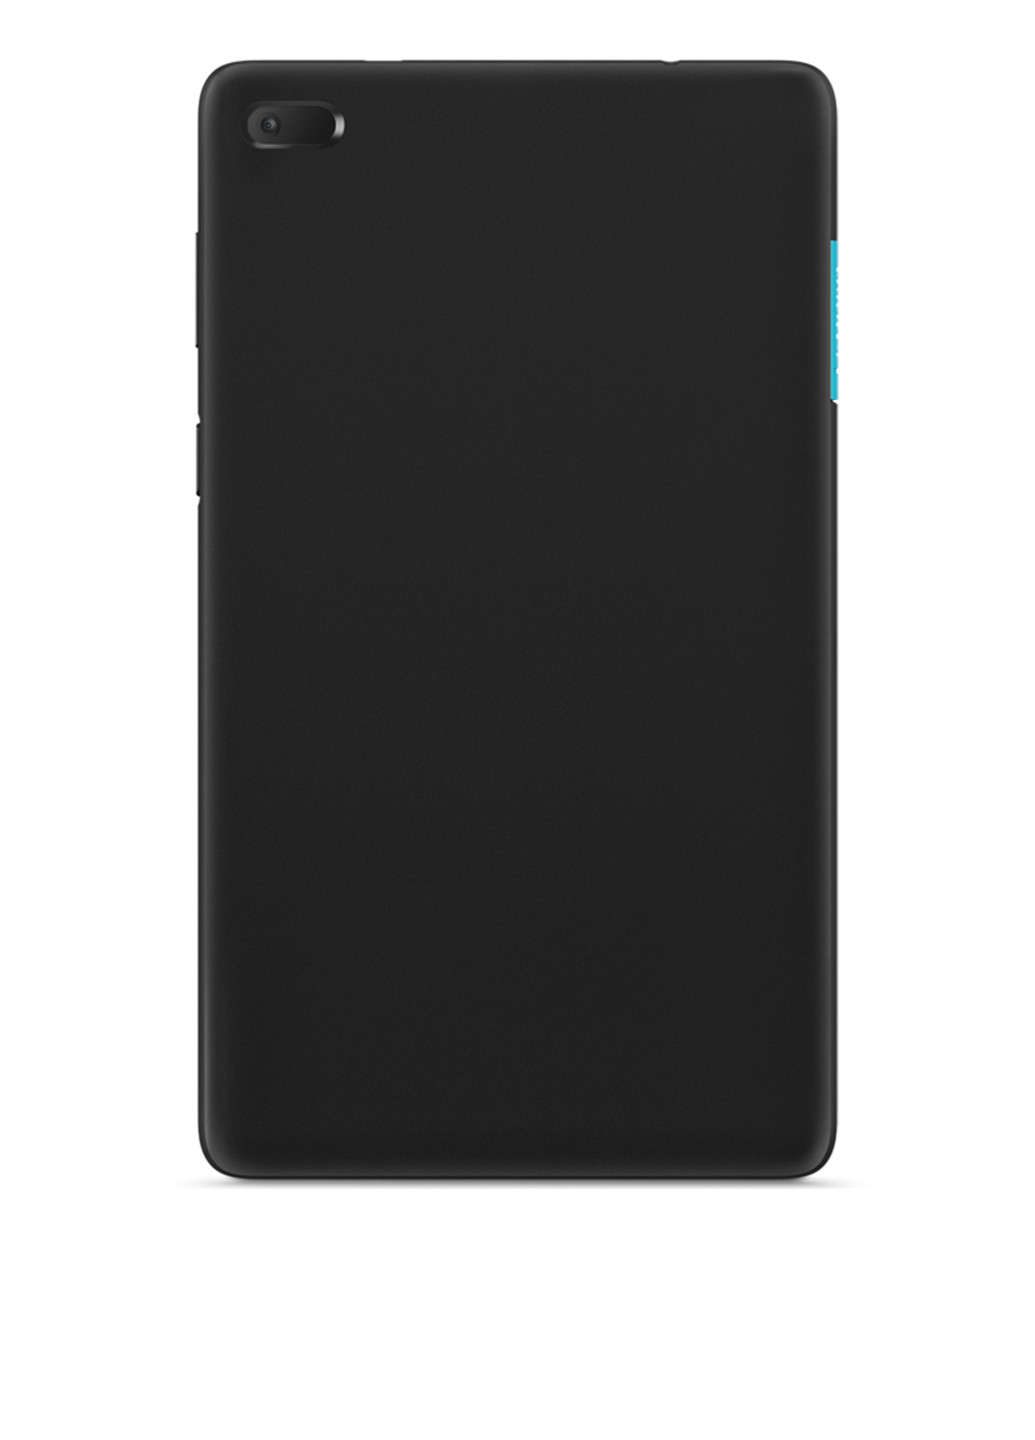 Планшет Tab E7 (ZA410016UA) Slate Black Lenovo tab e7 tb-7104i za410016ua (130103650)